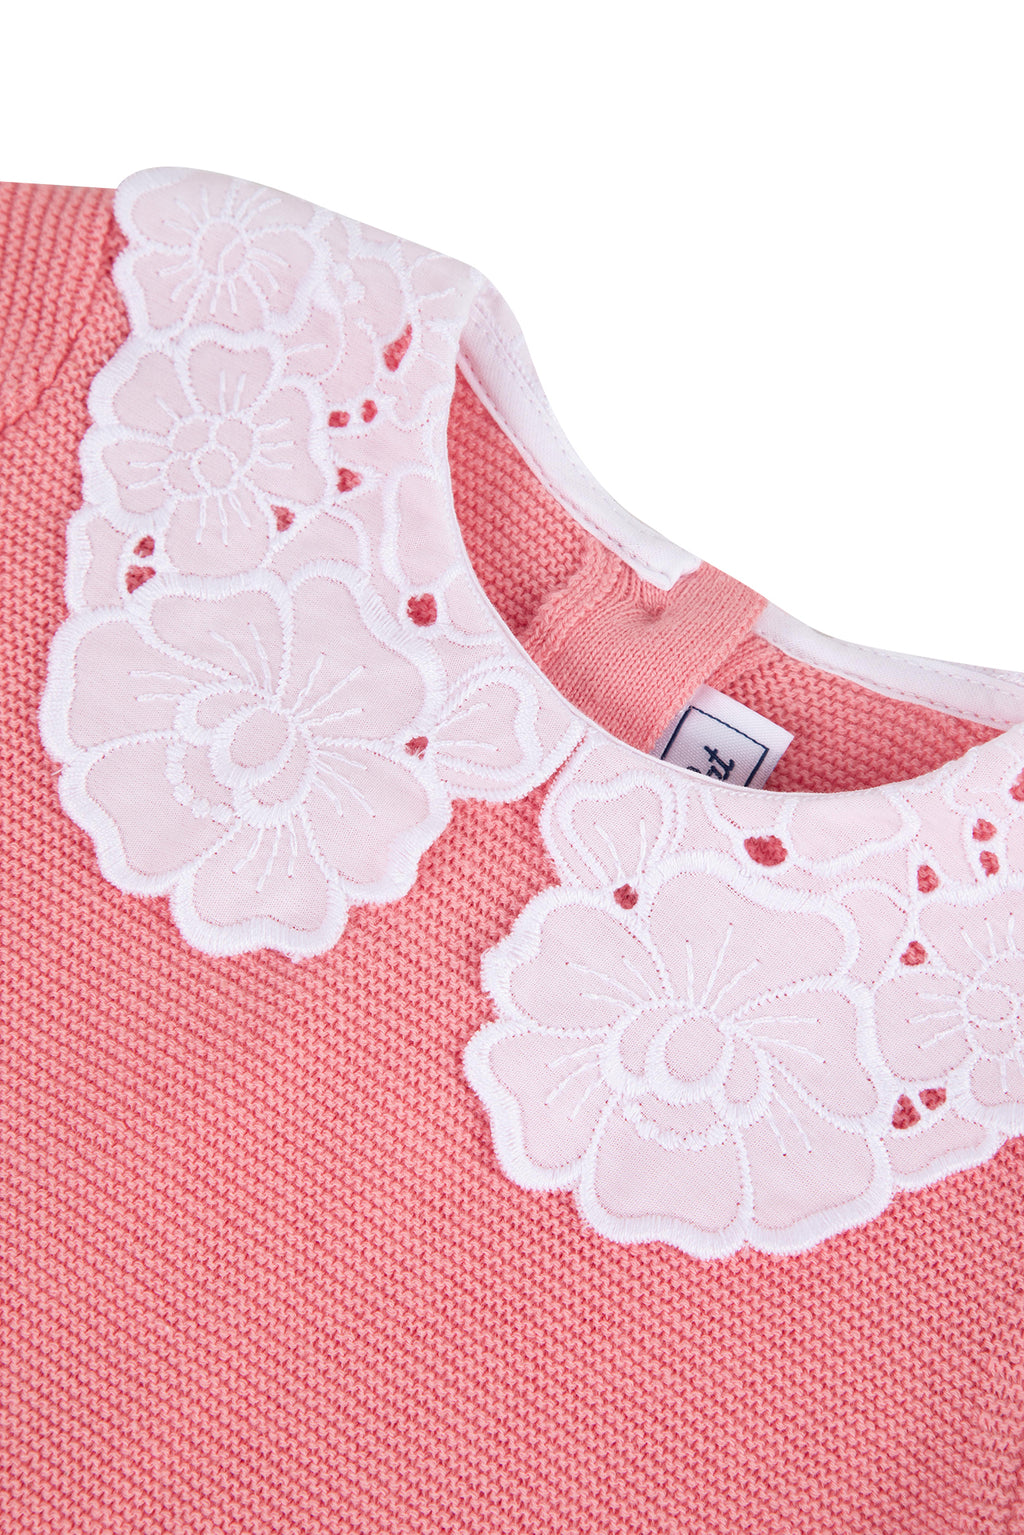 Sweater - Pink Peter pan collar